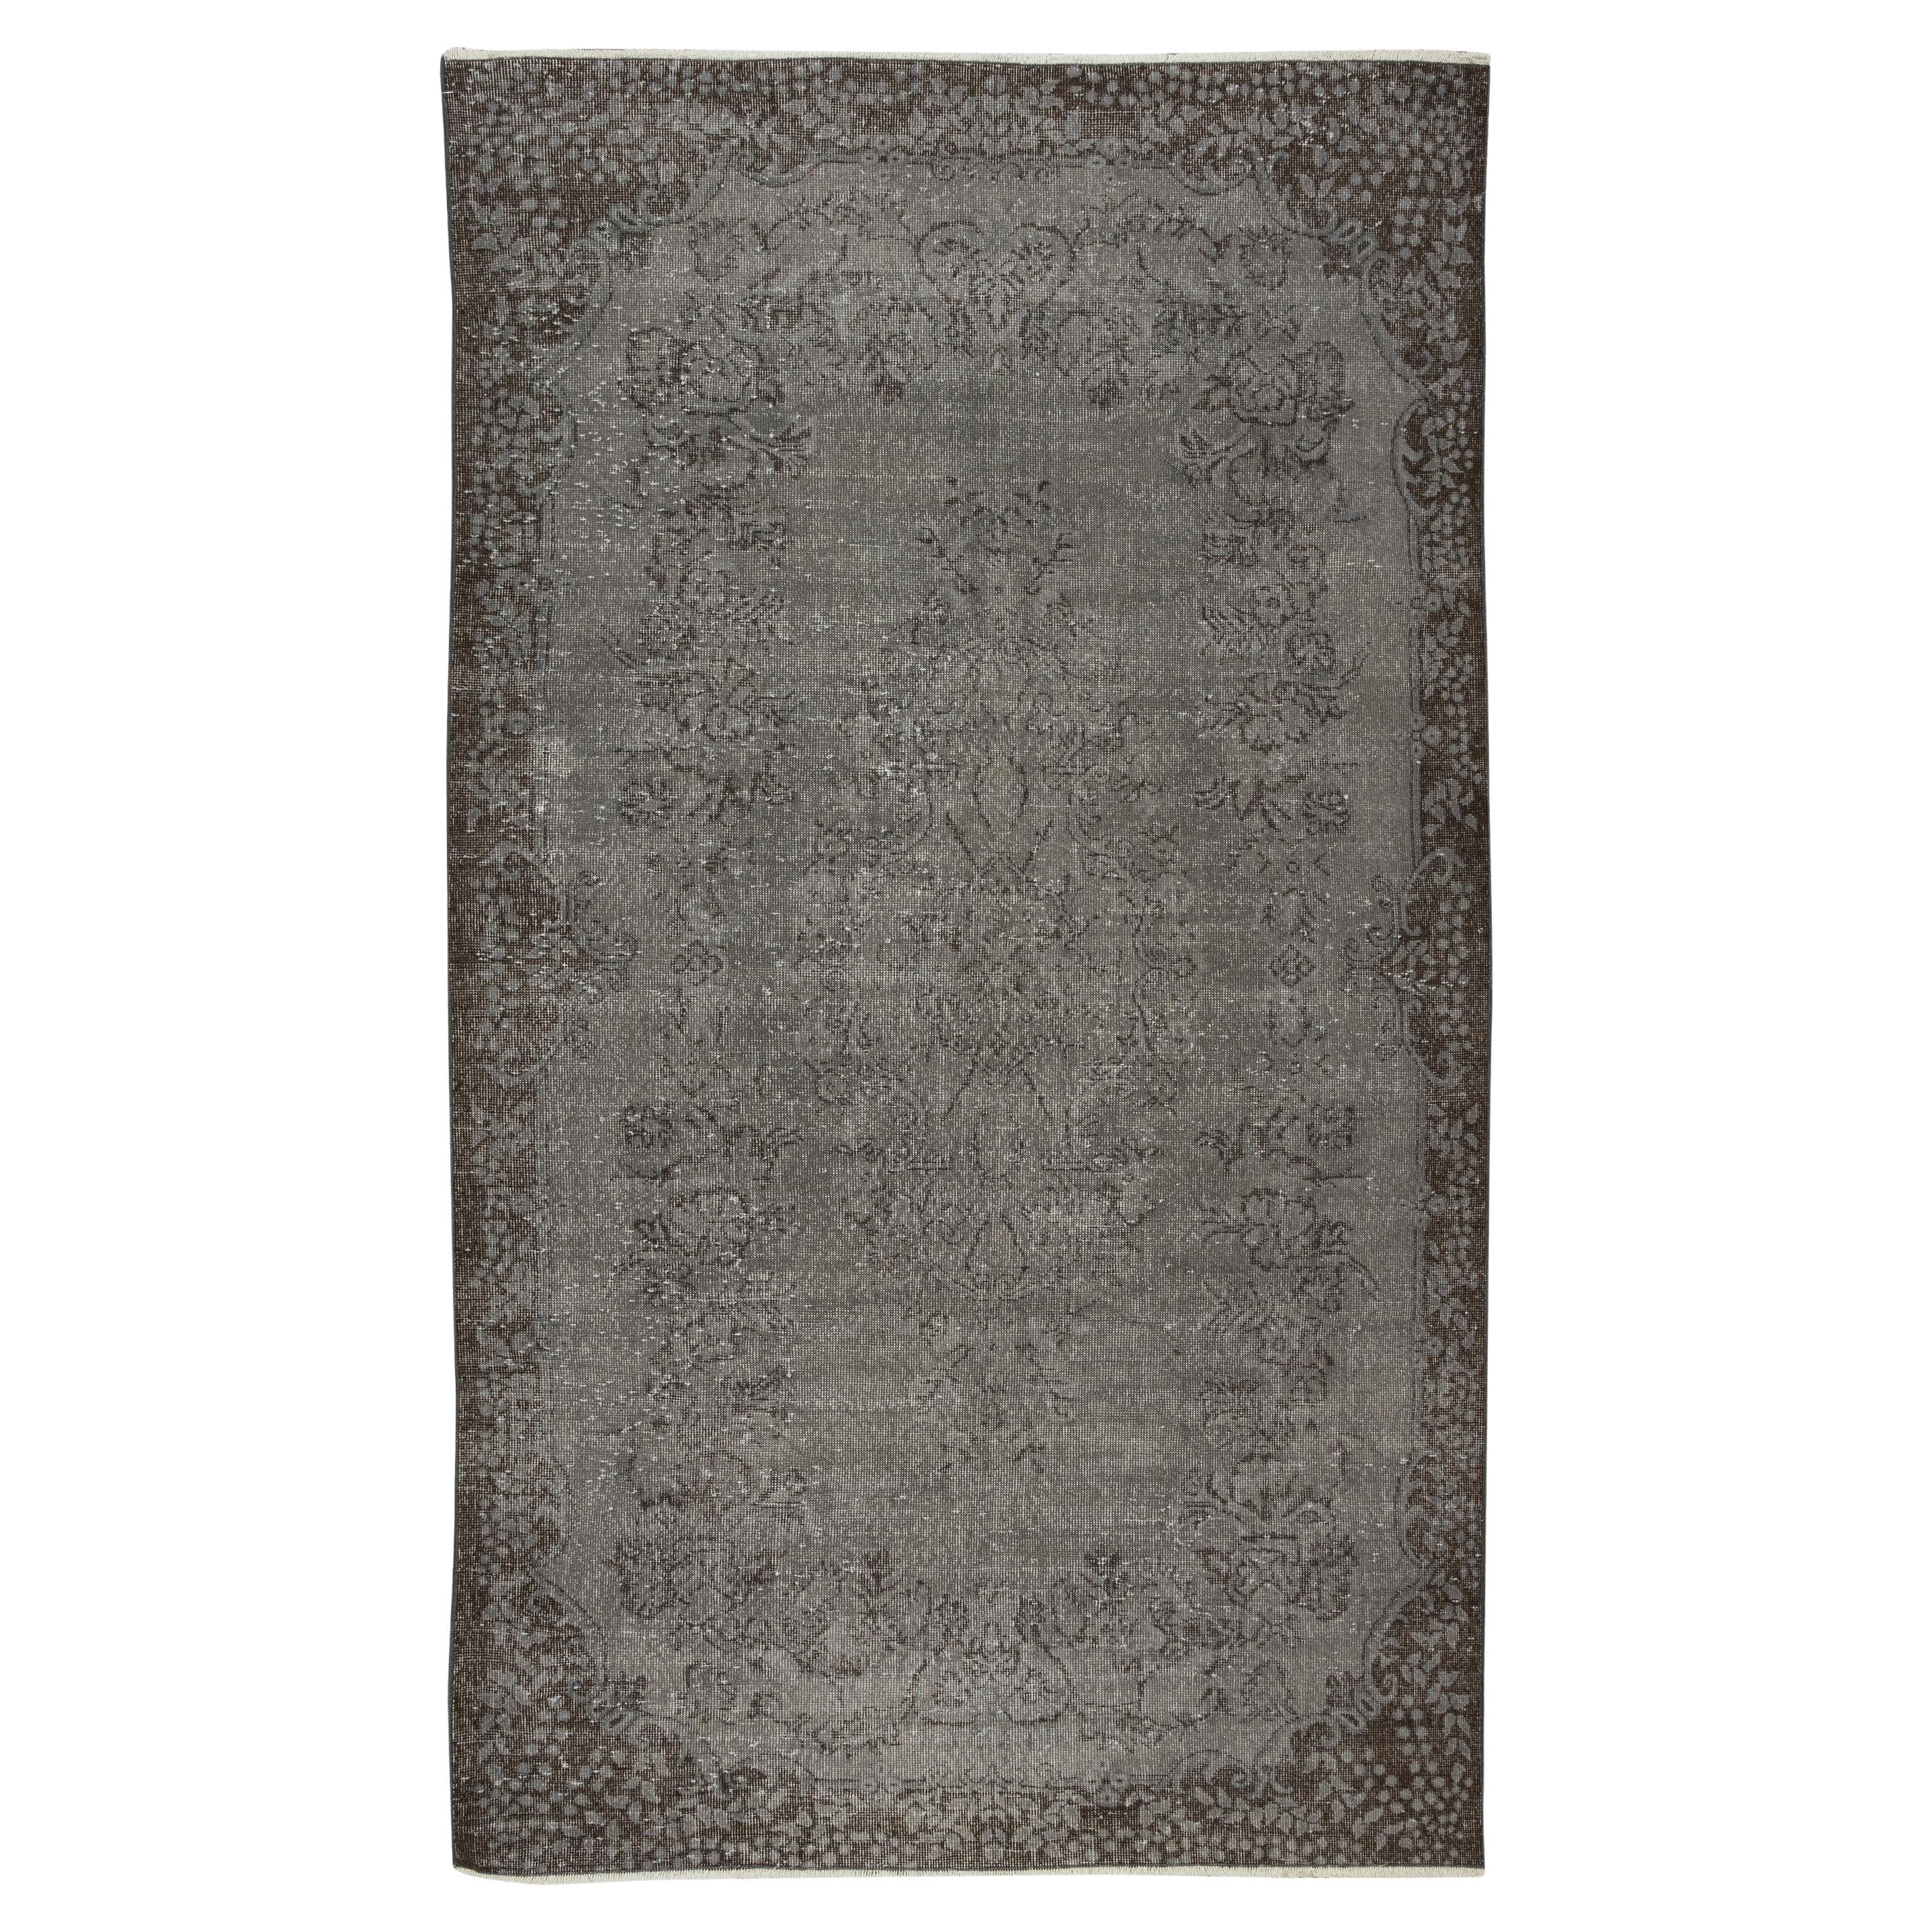 5.6x9,8 Ft Vintage-Teppich in Grau für modernes Interieur, handgefertigt in der Türkei